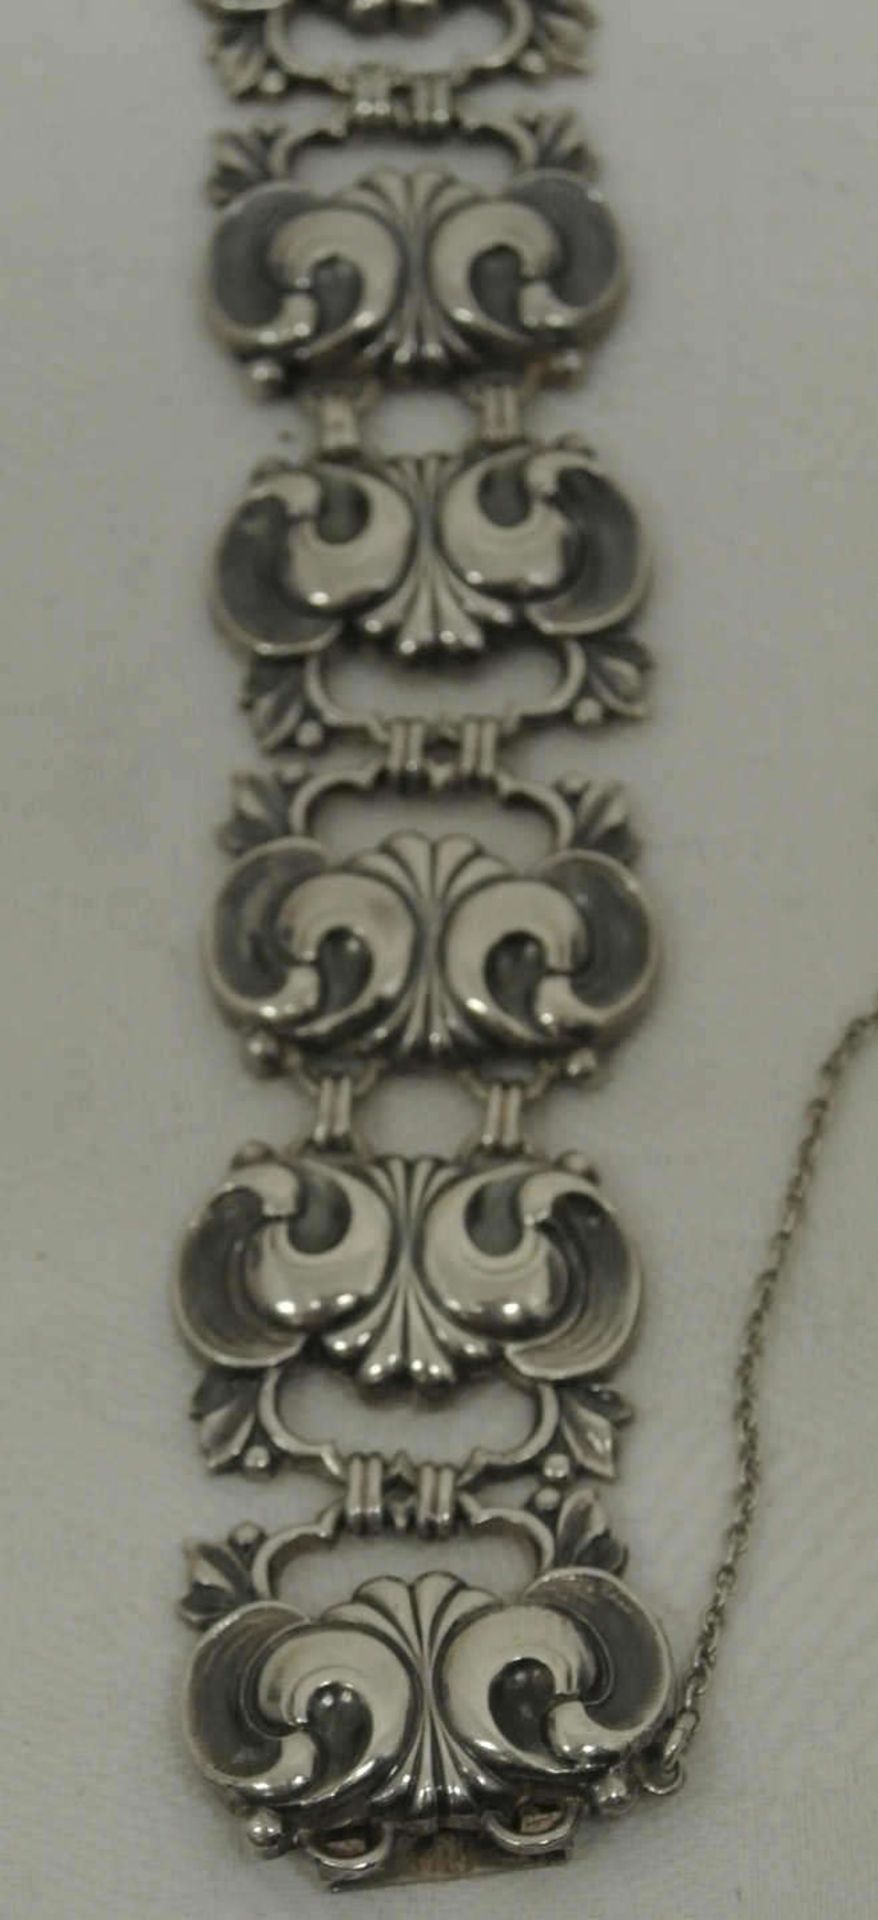 WMF Ikora Armband in 835er Silber gearbeitet. Länge ca. 20 cm. WMF Ikora bracelet in 835 silver - Bild 2 aus 3